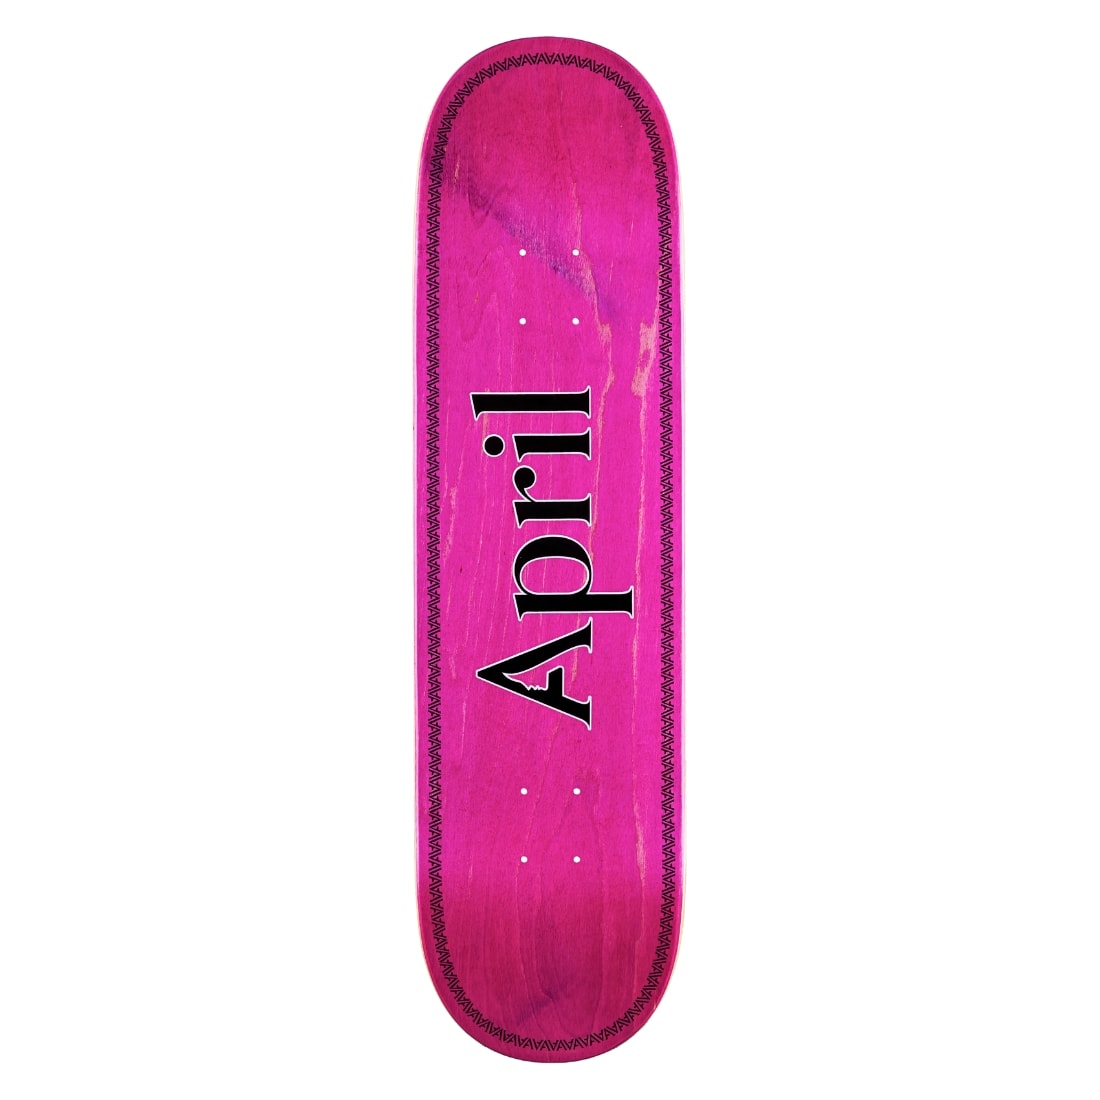 April 8.38" OG Logo Helix Skate Deck - Pink - Skateboard Deck by April 8.38 inch